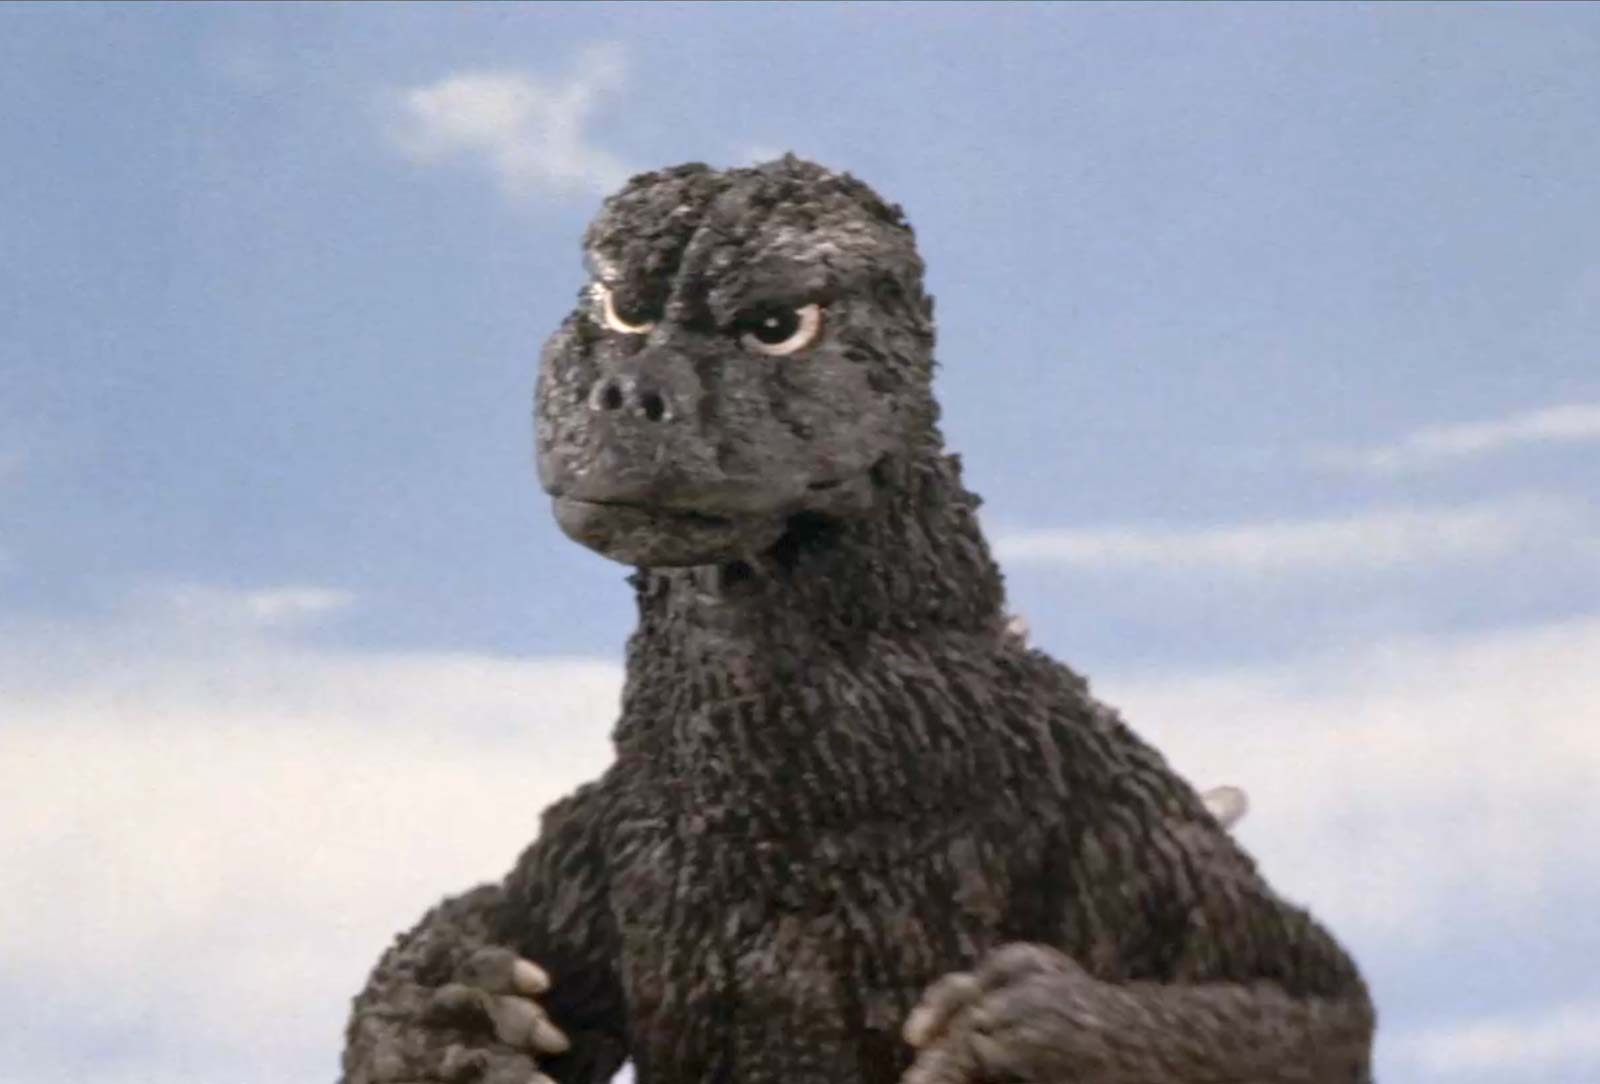 MegaroGoji (1974) - Becoming Godzilla